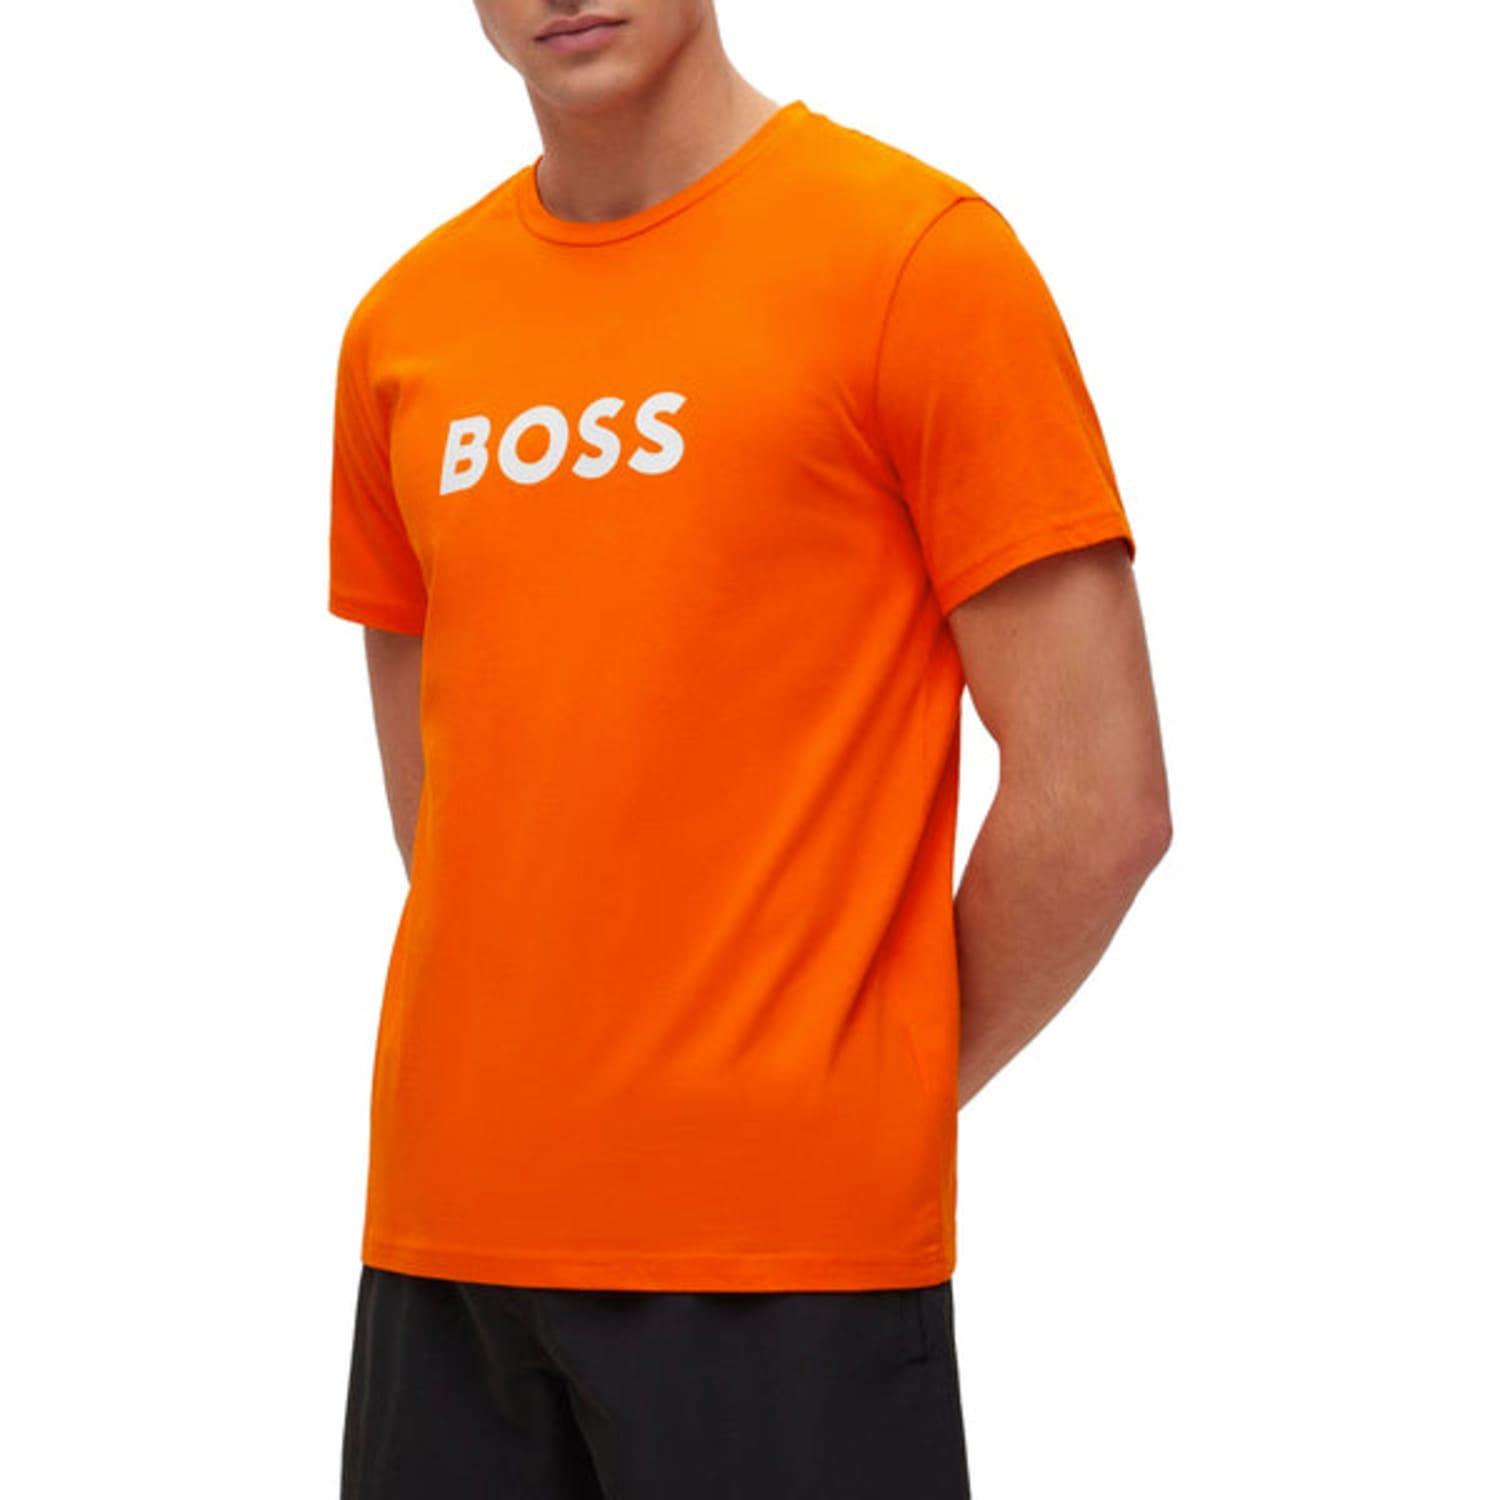 T-shirt in HUGO by Rn Orange | BOSS for BOSS Men Lyst